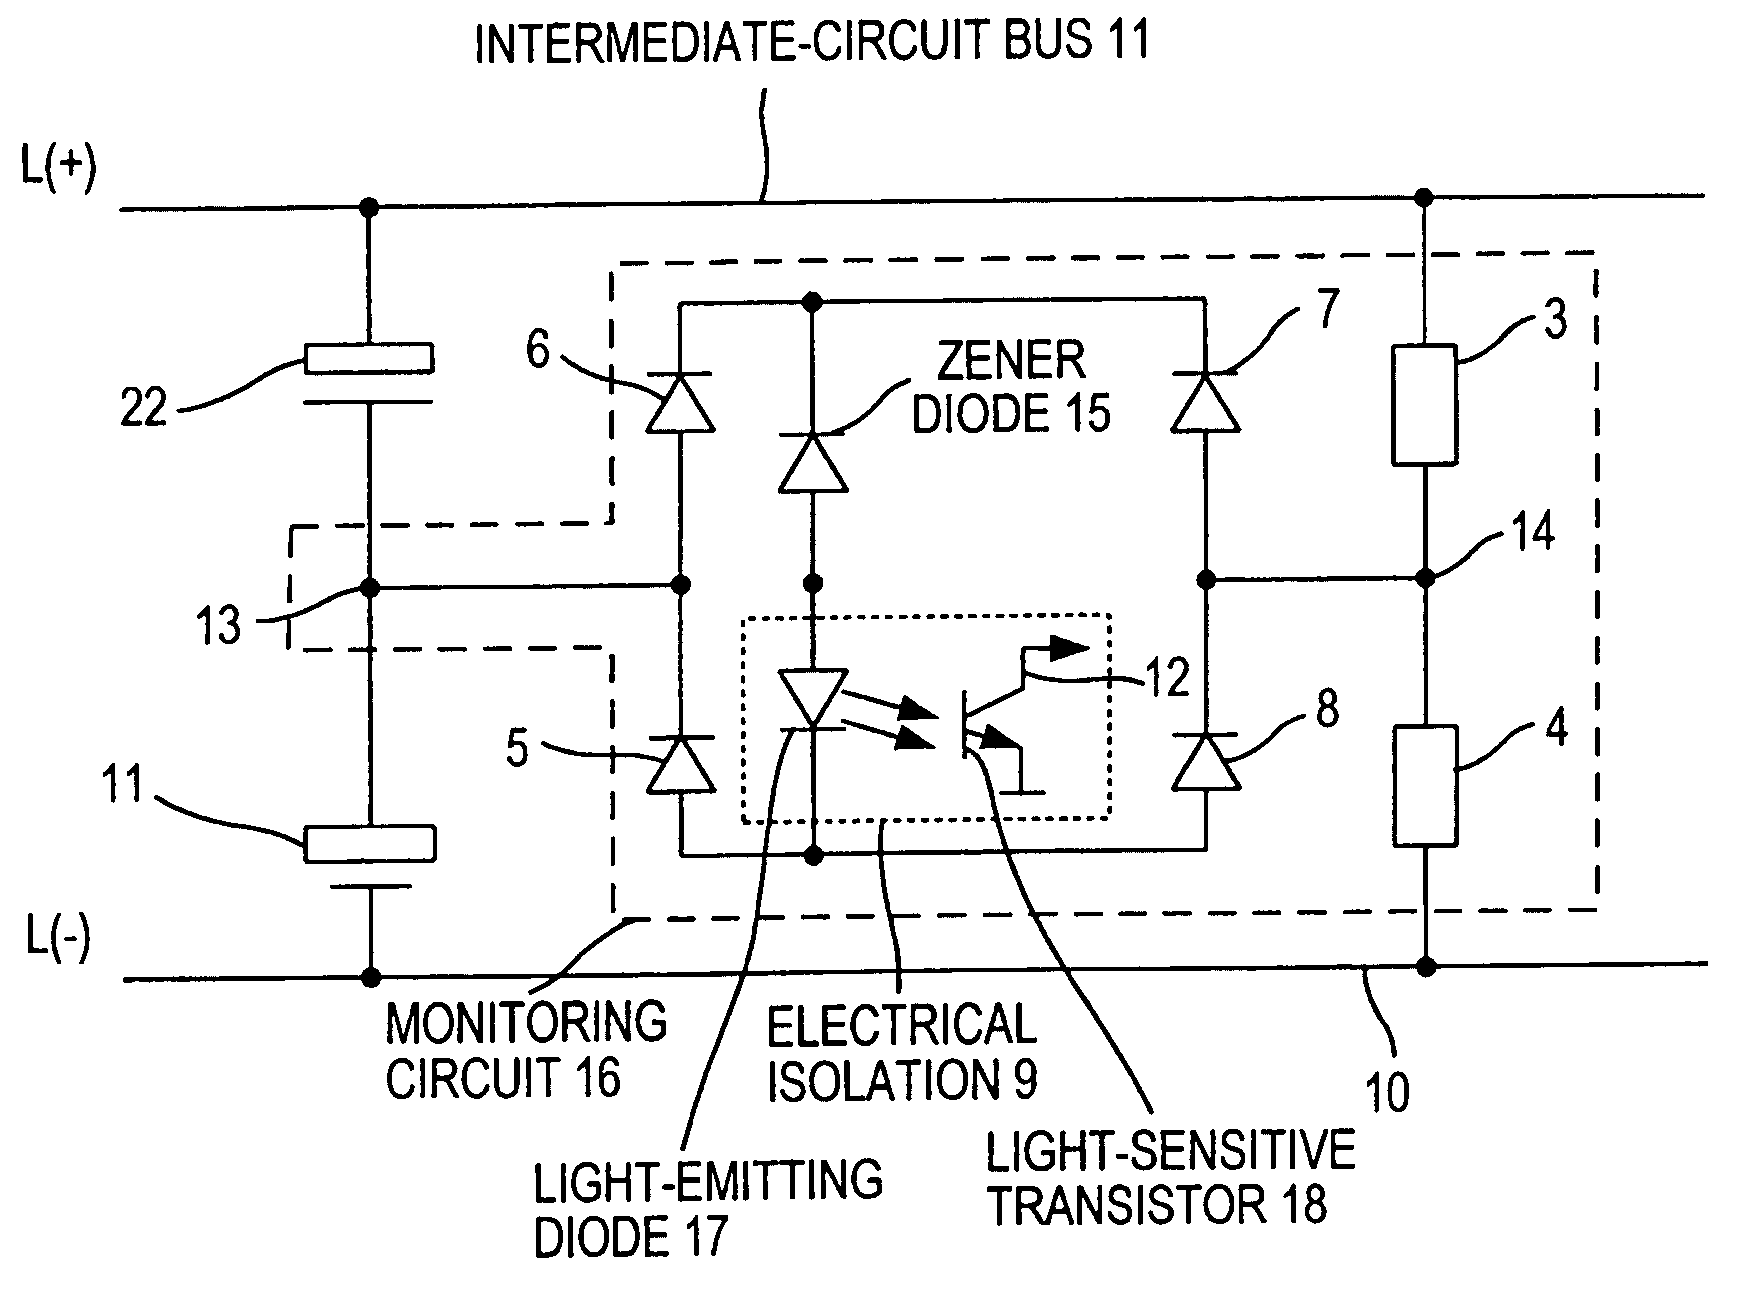 Intermediate circuit capacitor short-circuit monitoring